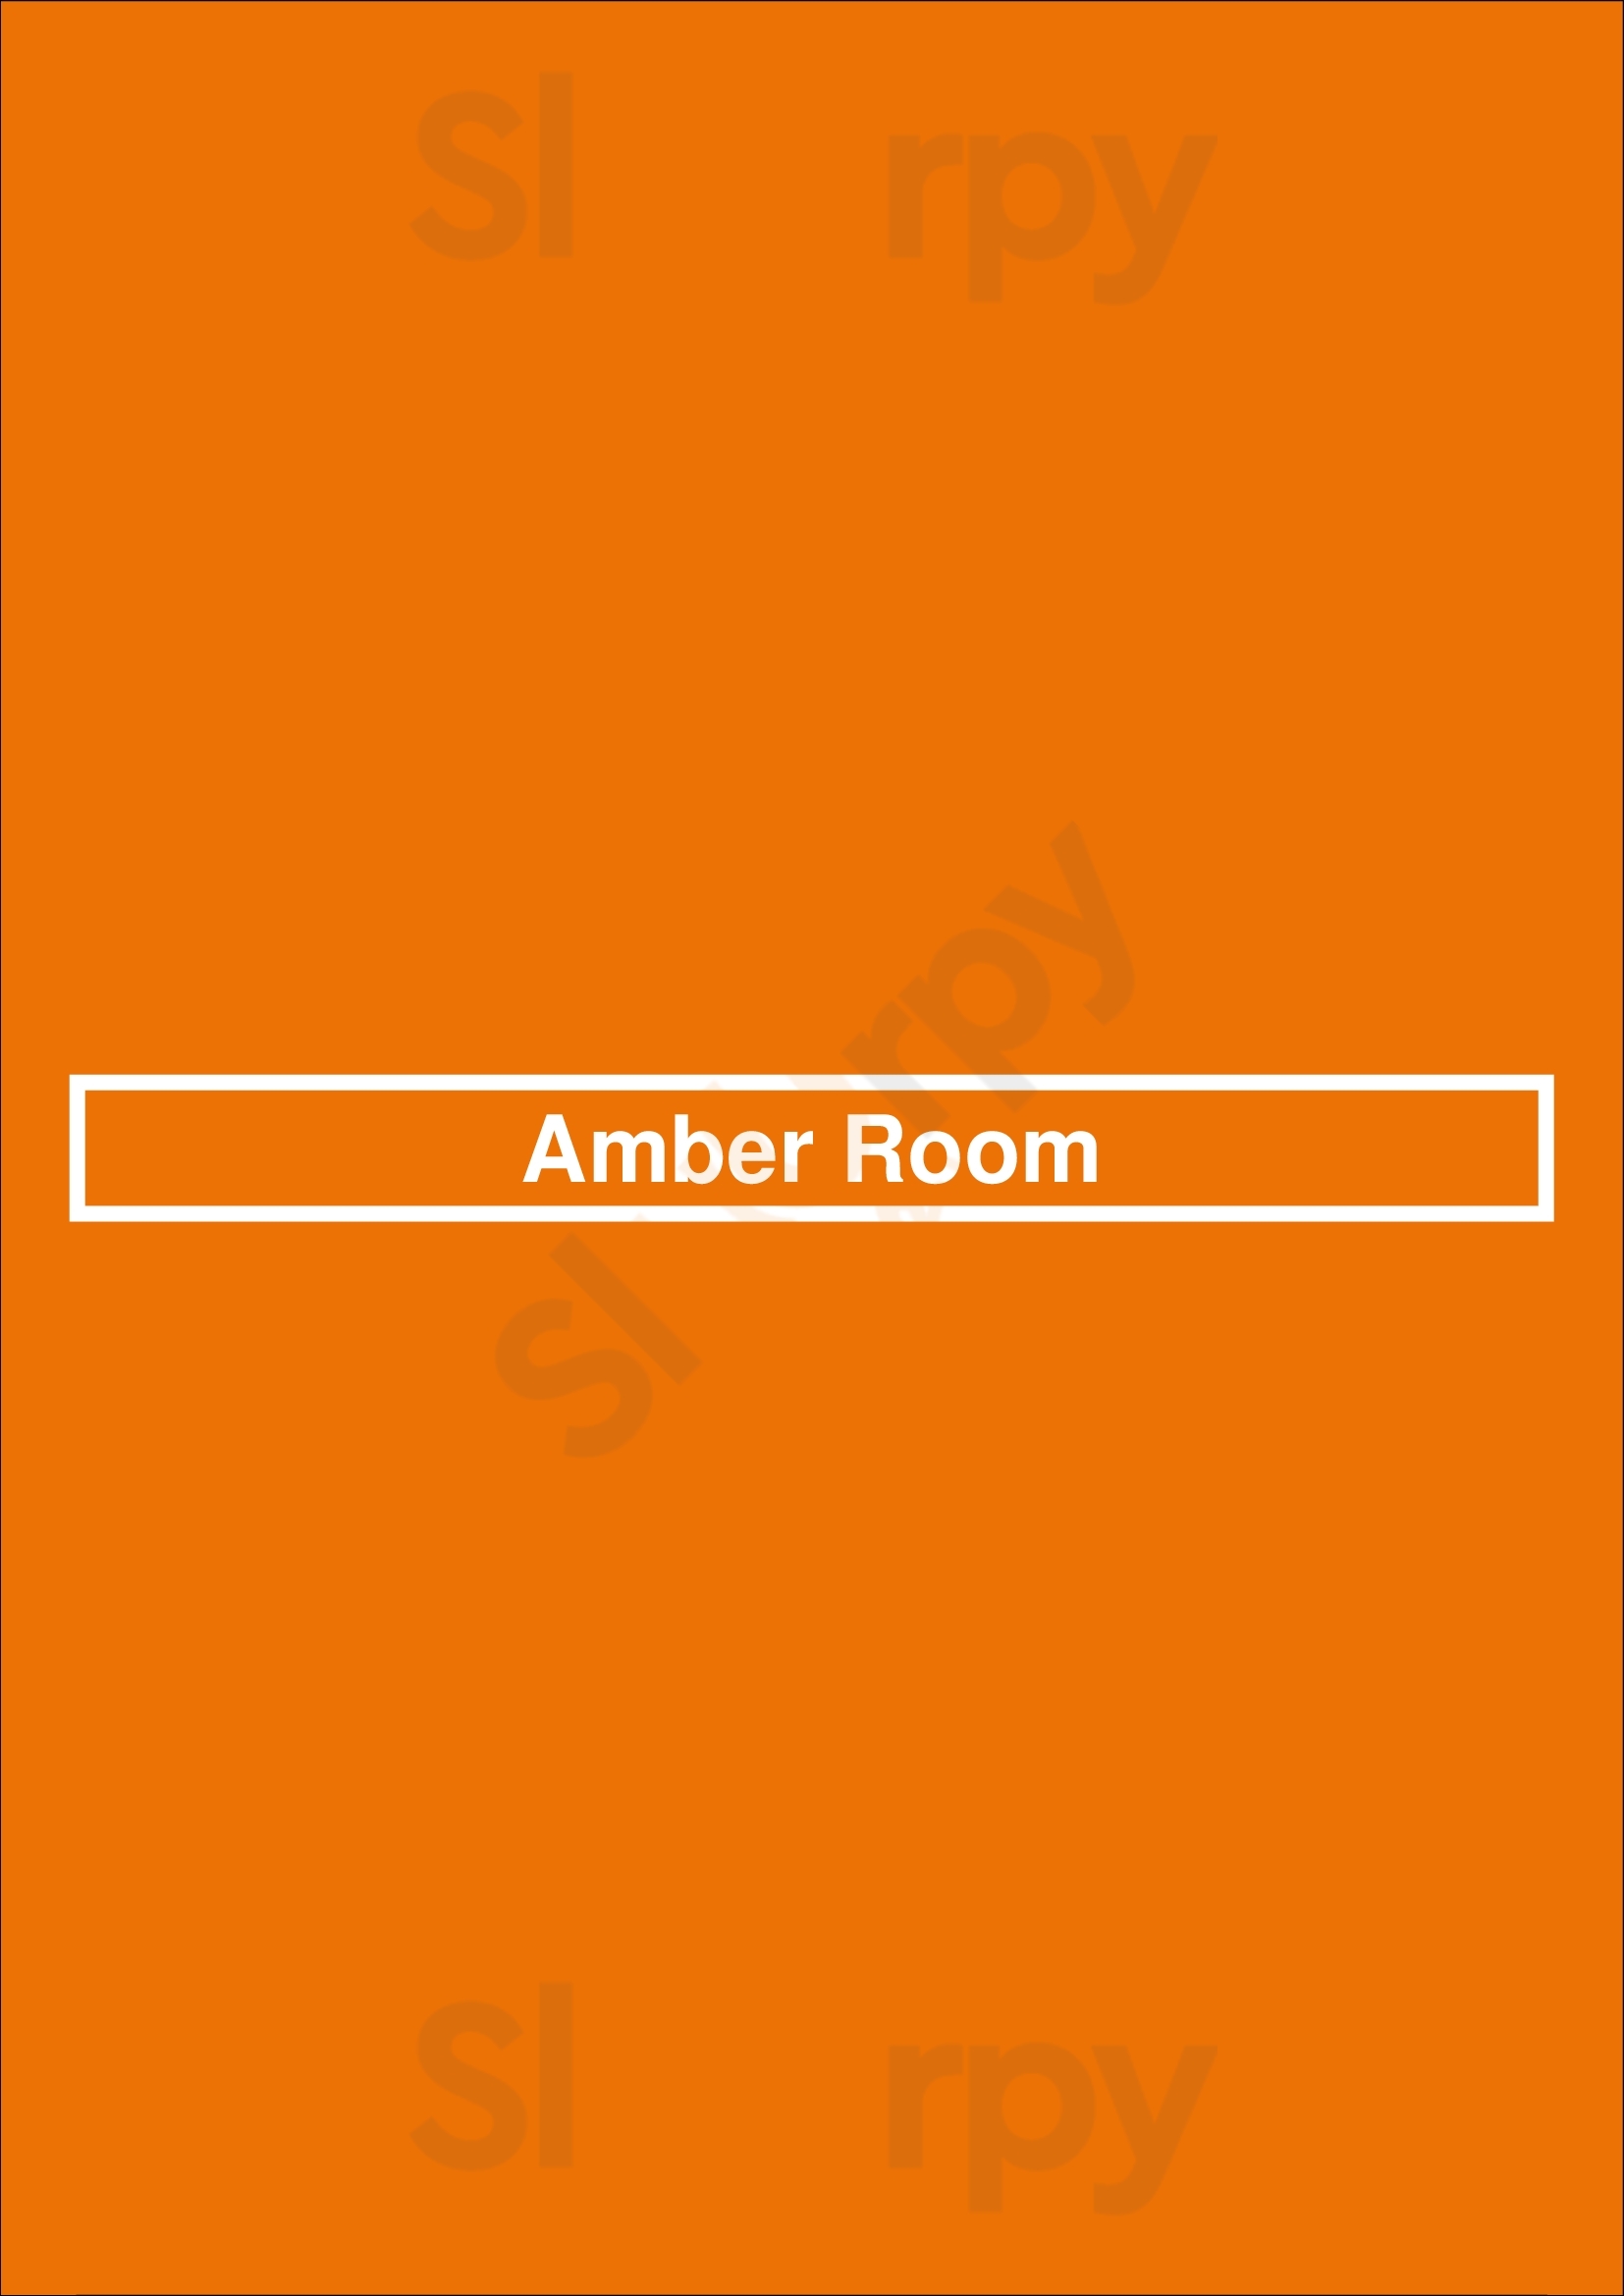 Amber Room Warszawa Menu - 1